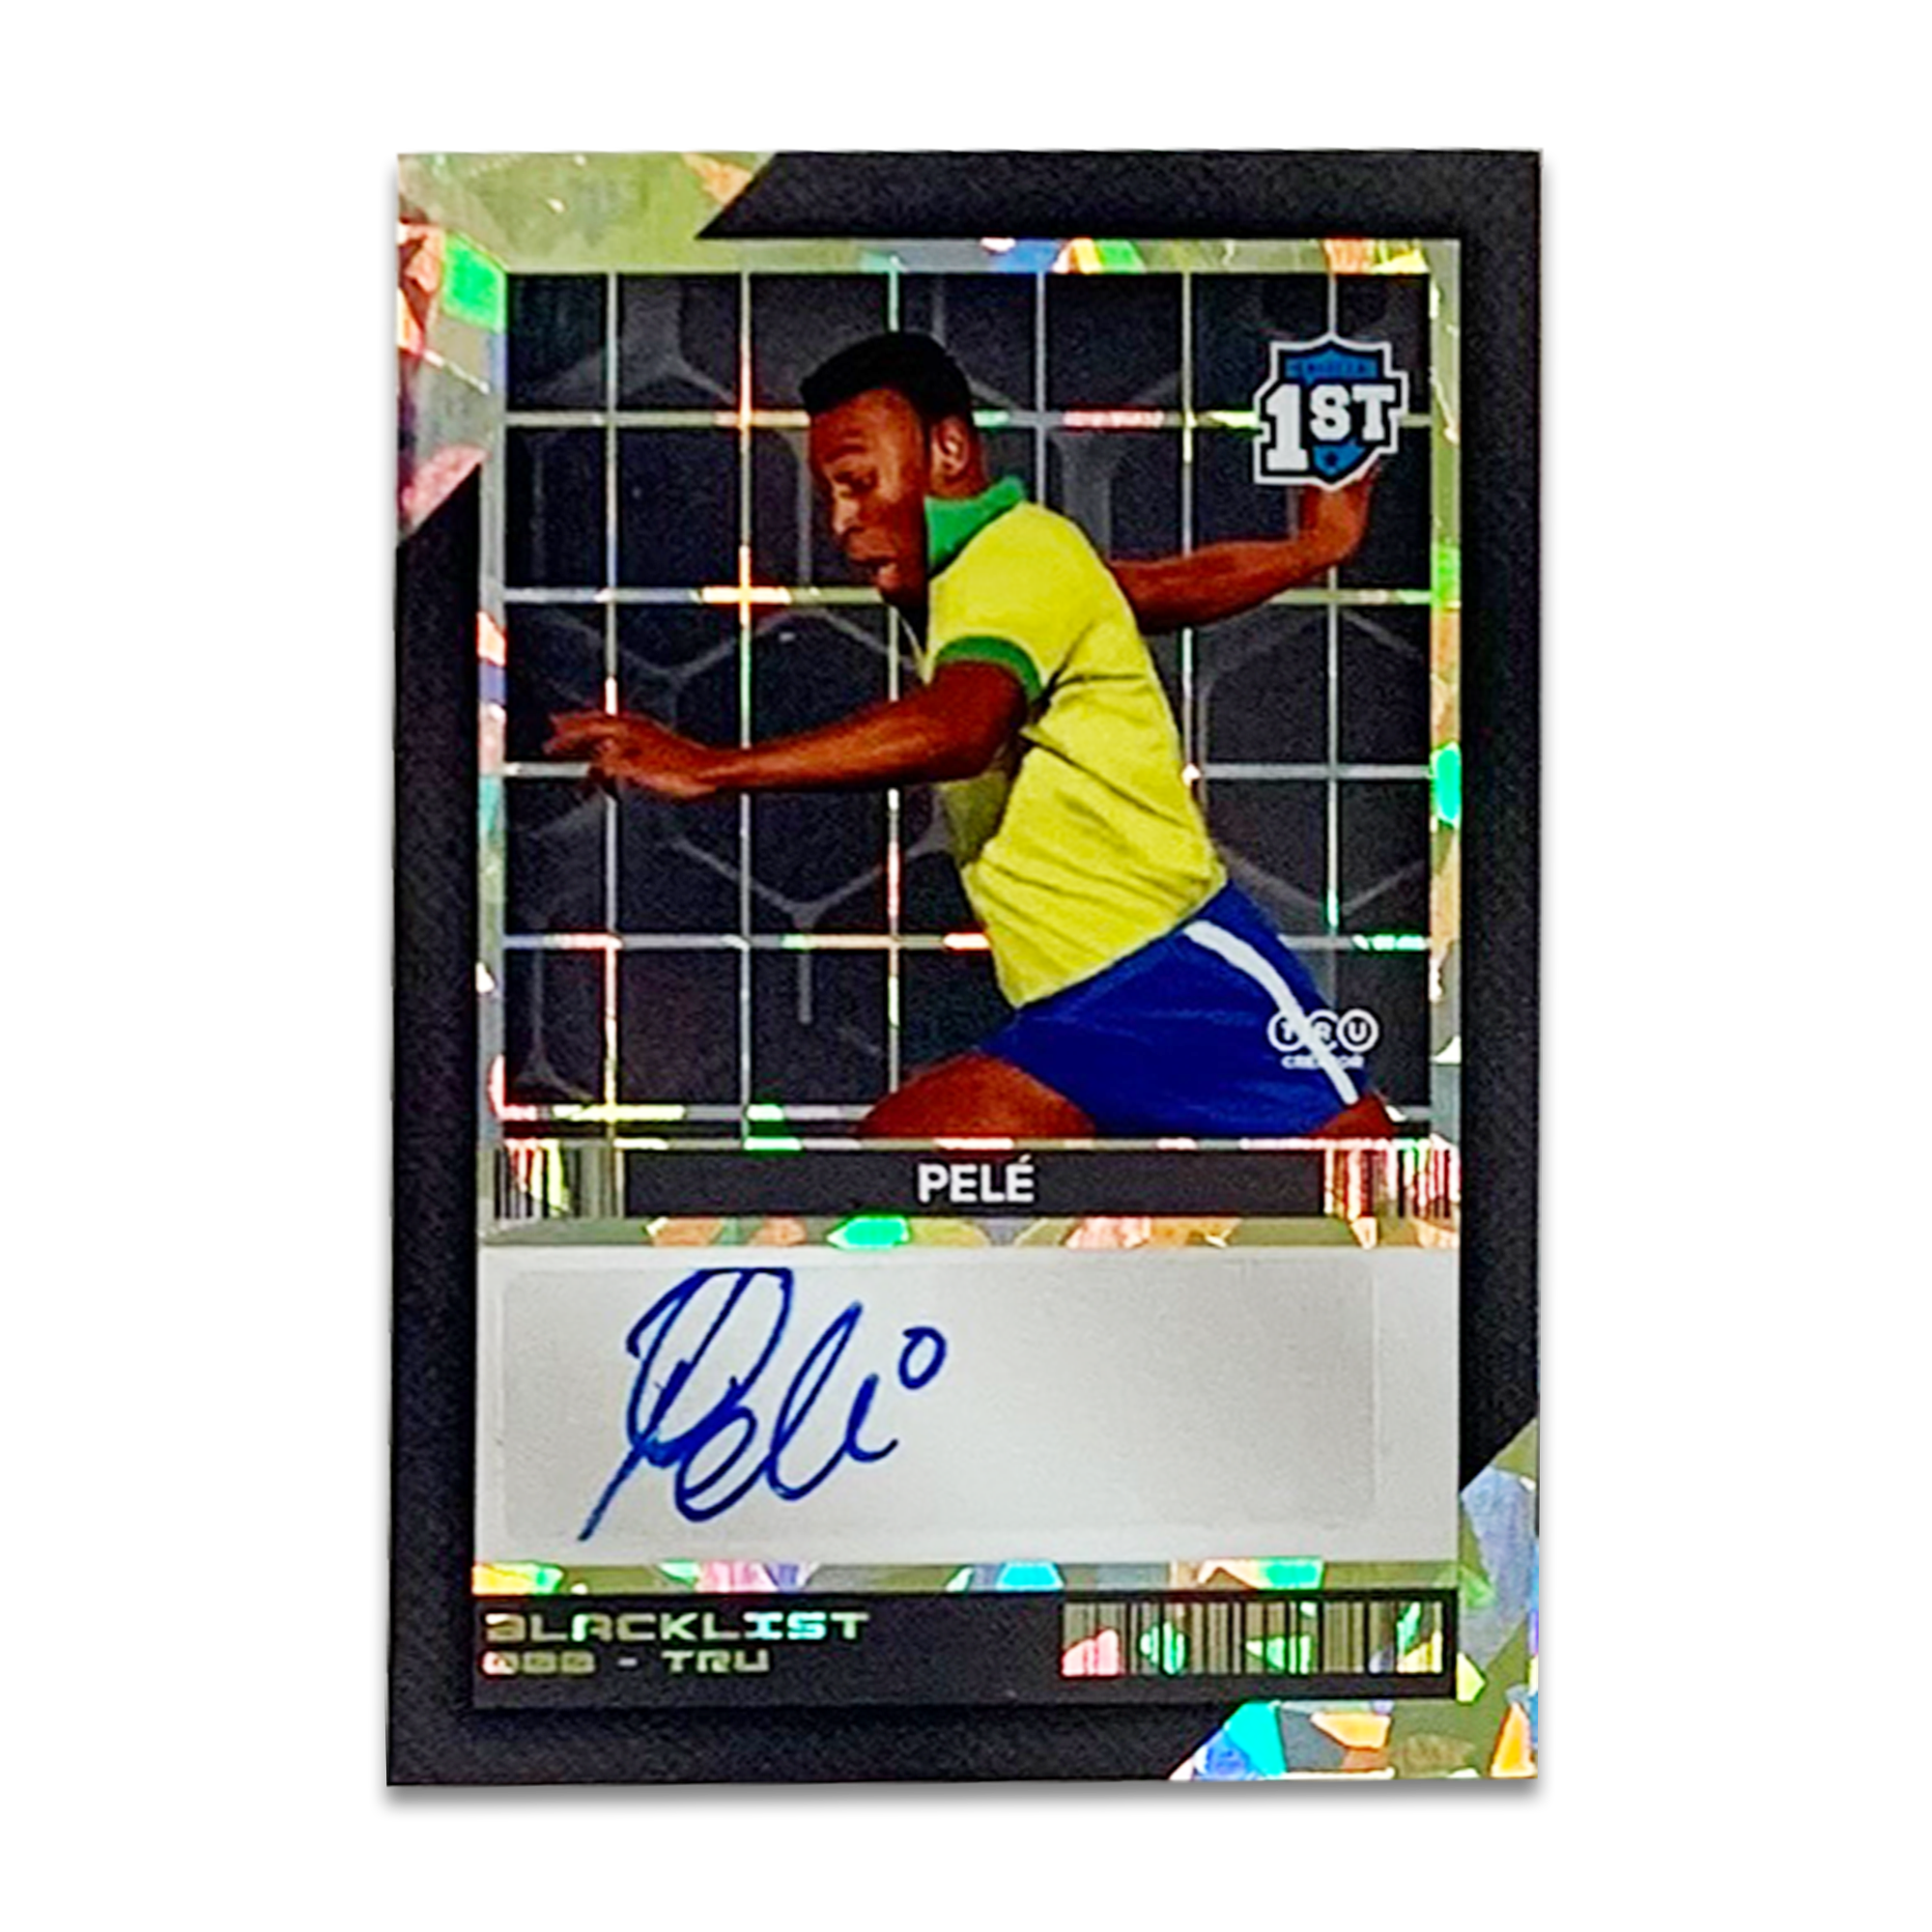 Pelé Autograph - Blacklist